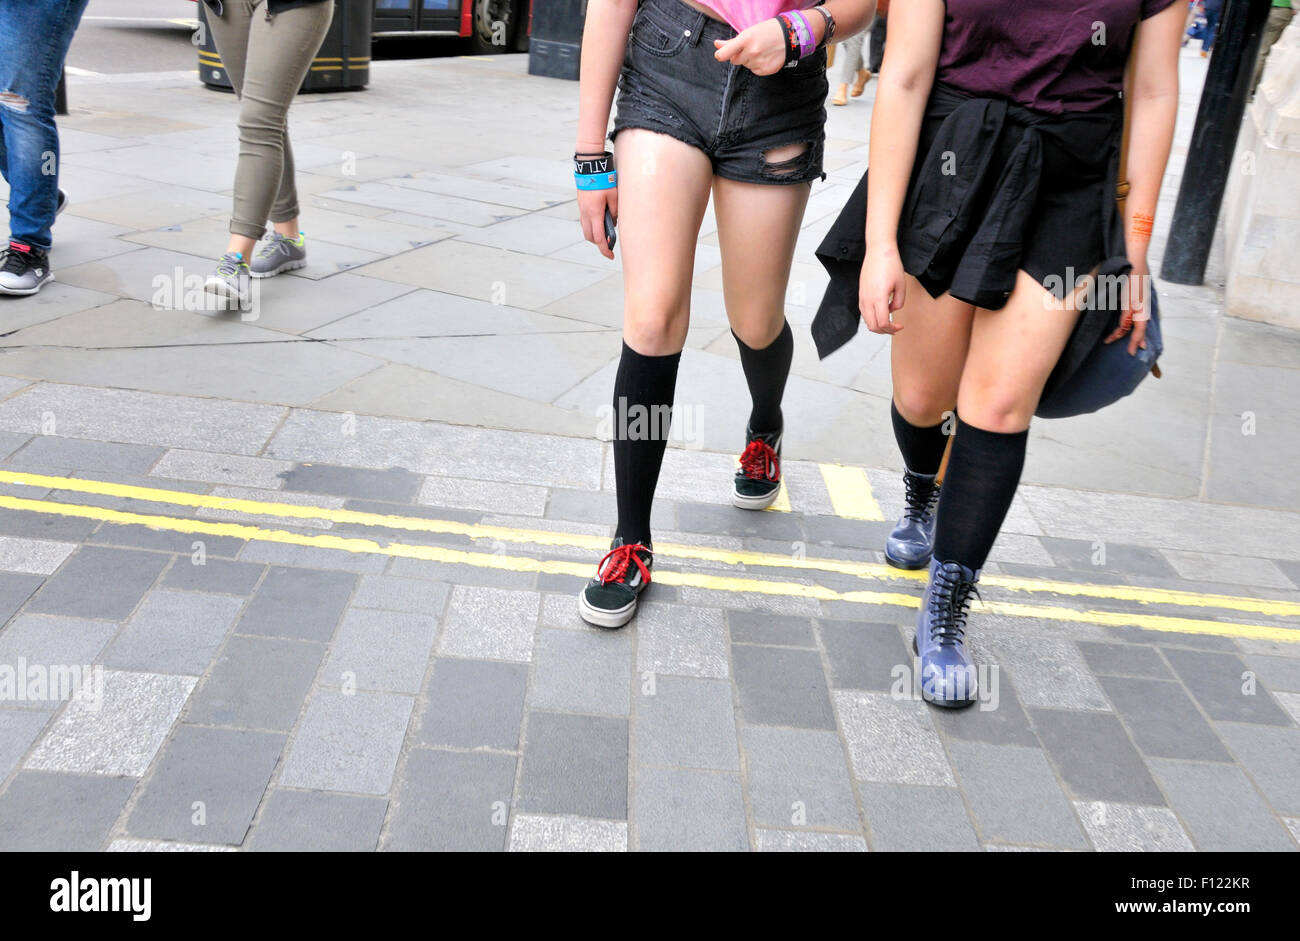 Londres, Angleterre, Royaume-Uni. Les jambes des filles dans la rue Banque D'Images